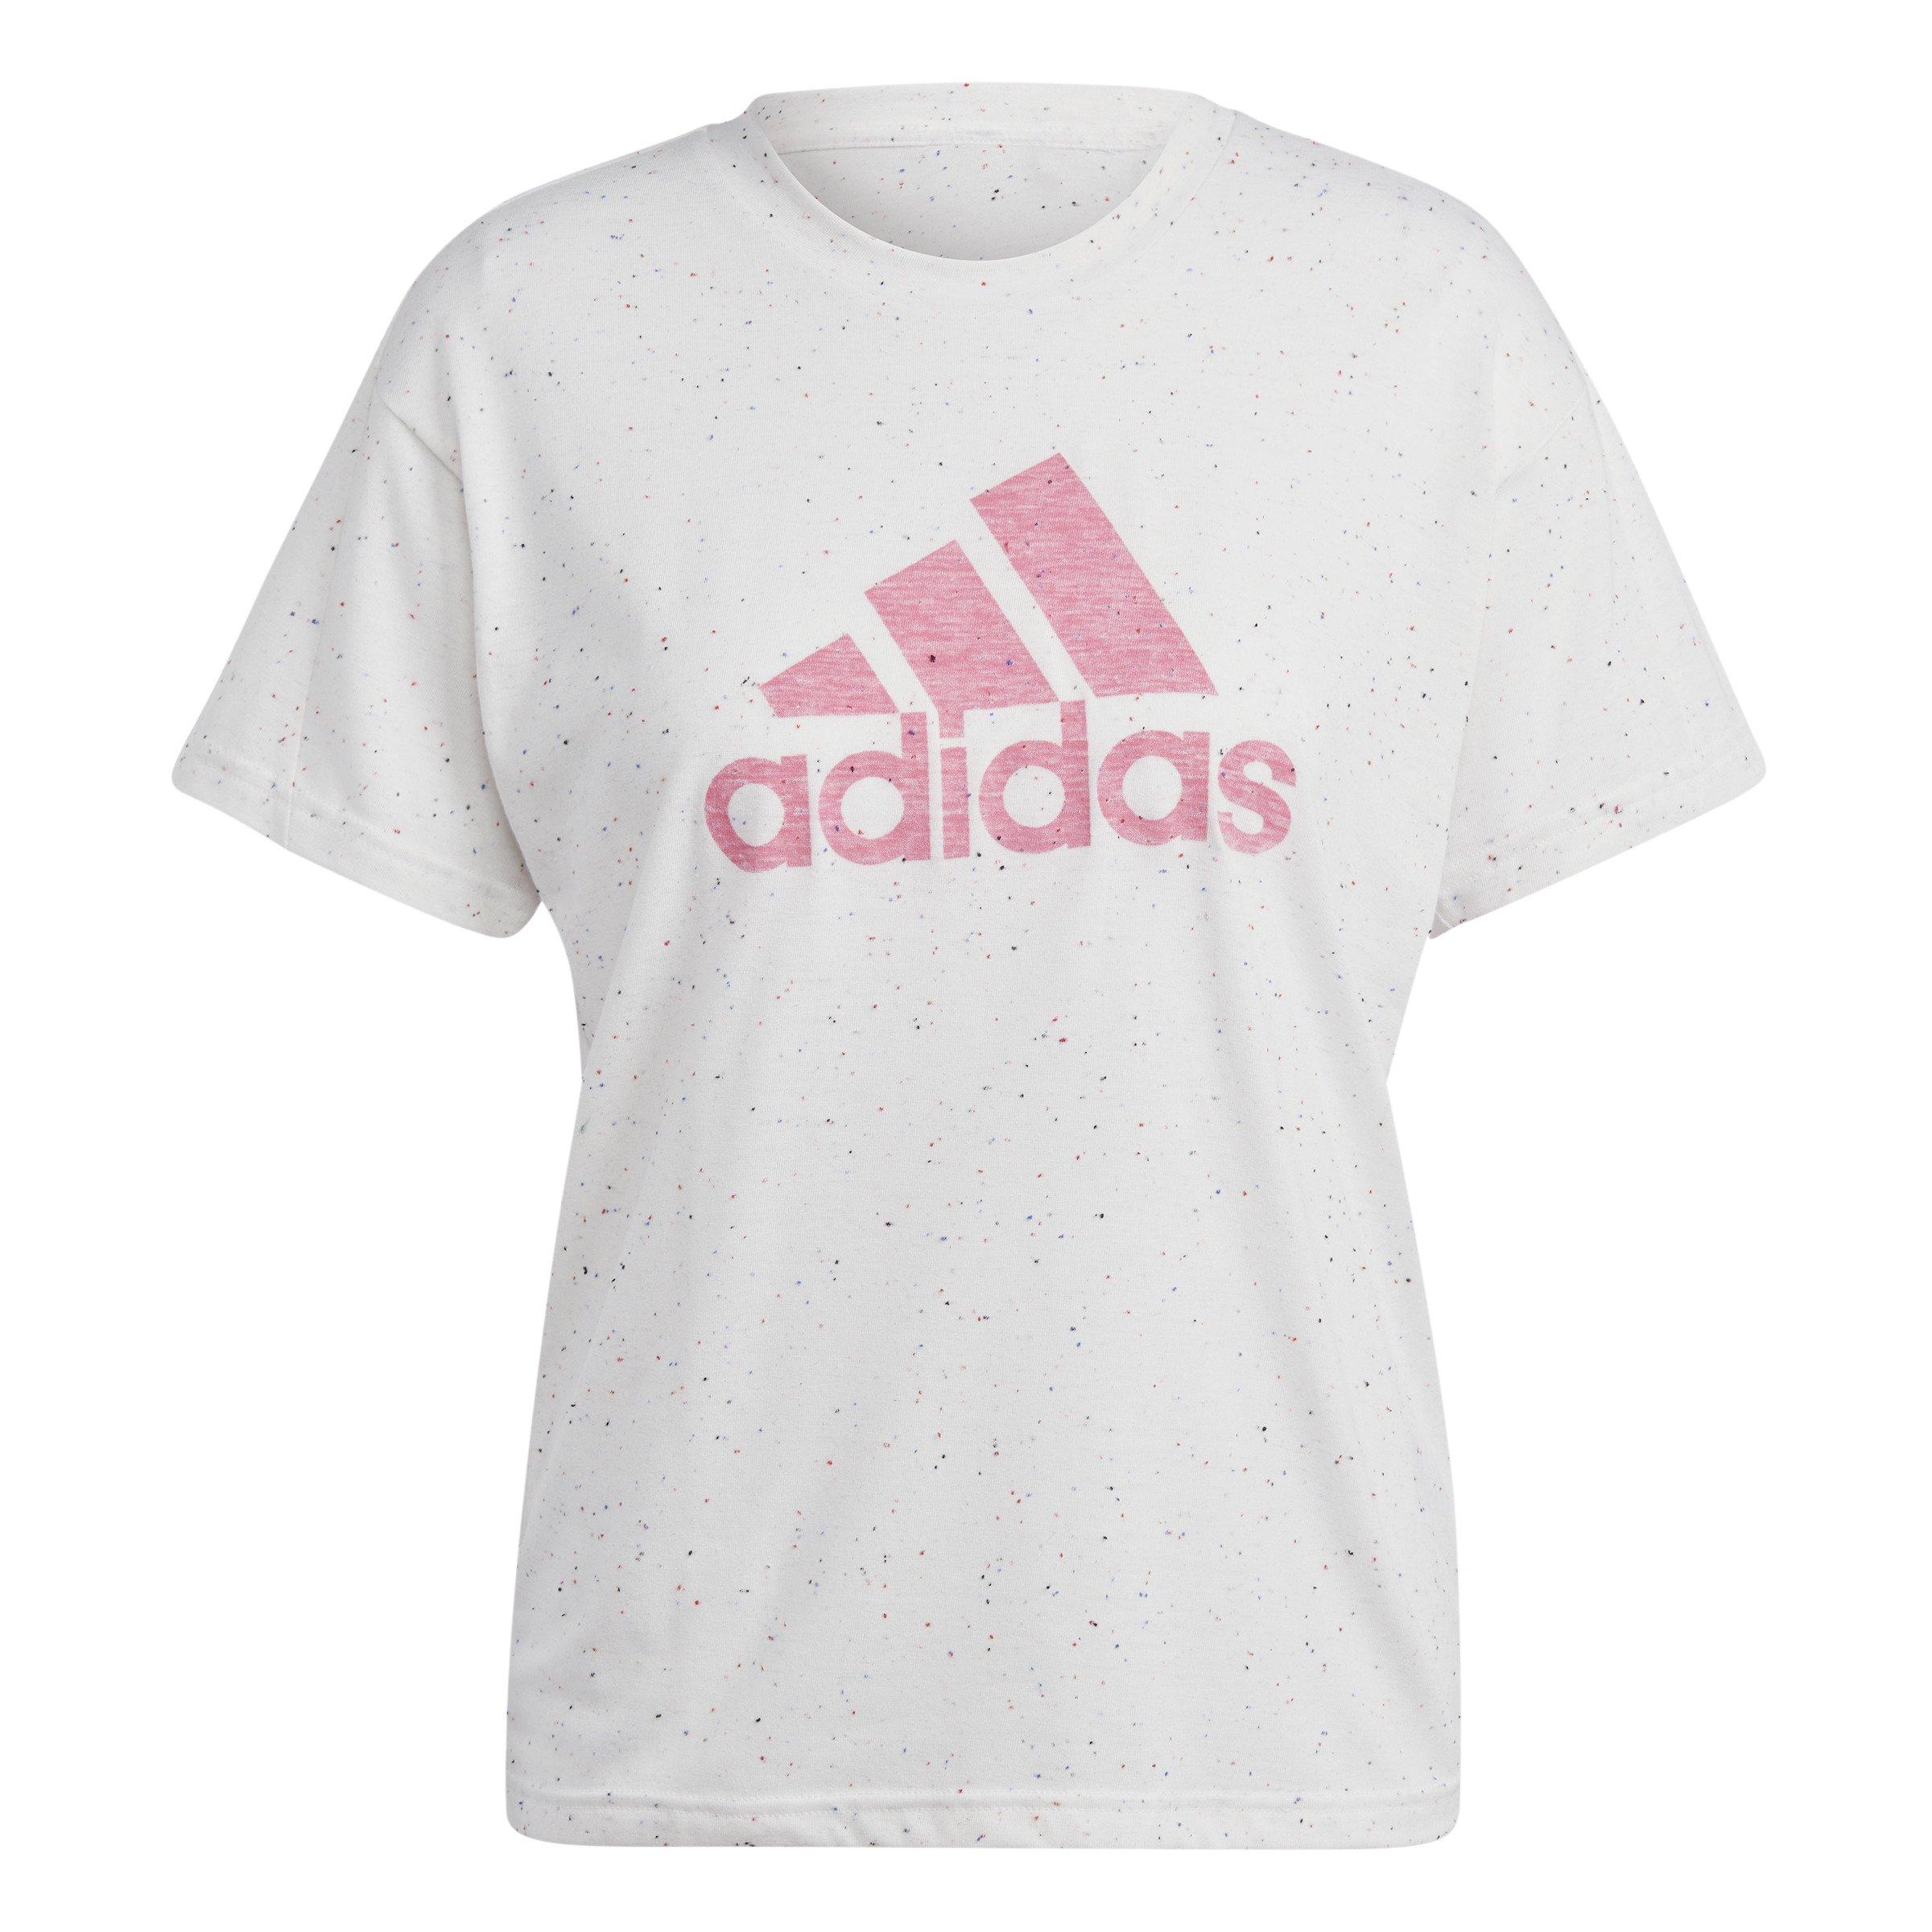 adidas Women\'s Future Icons T-Shirt - Winners White